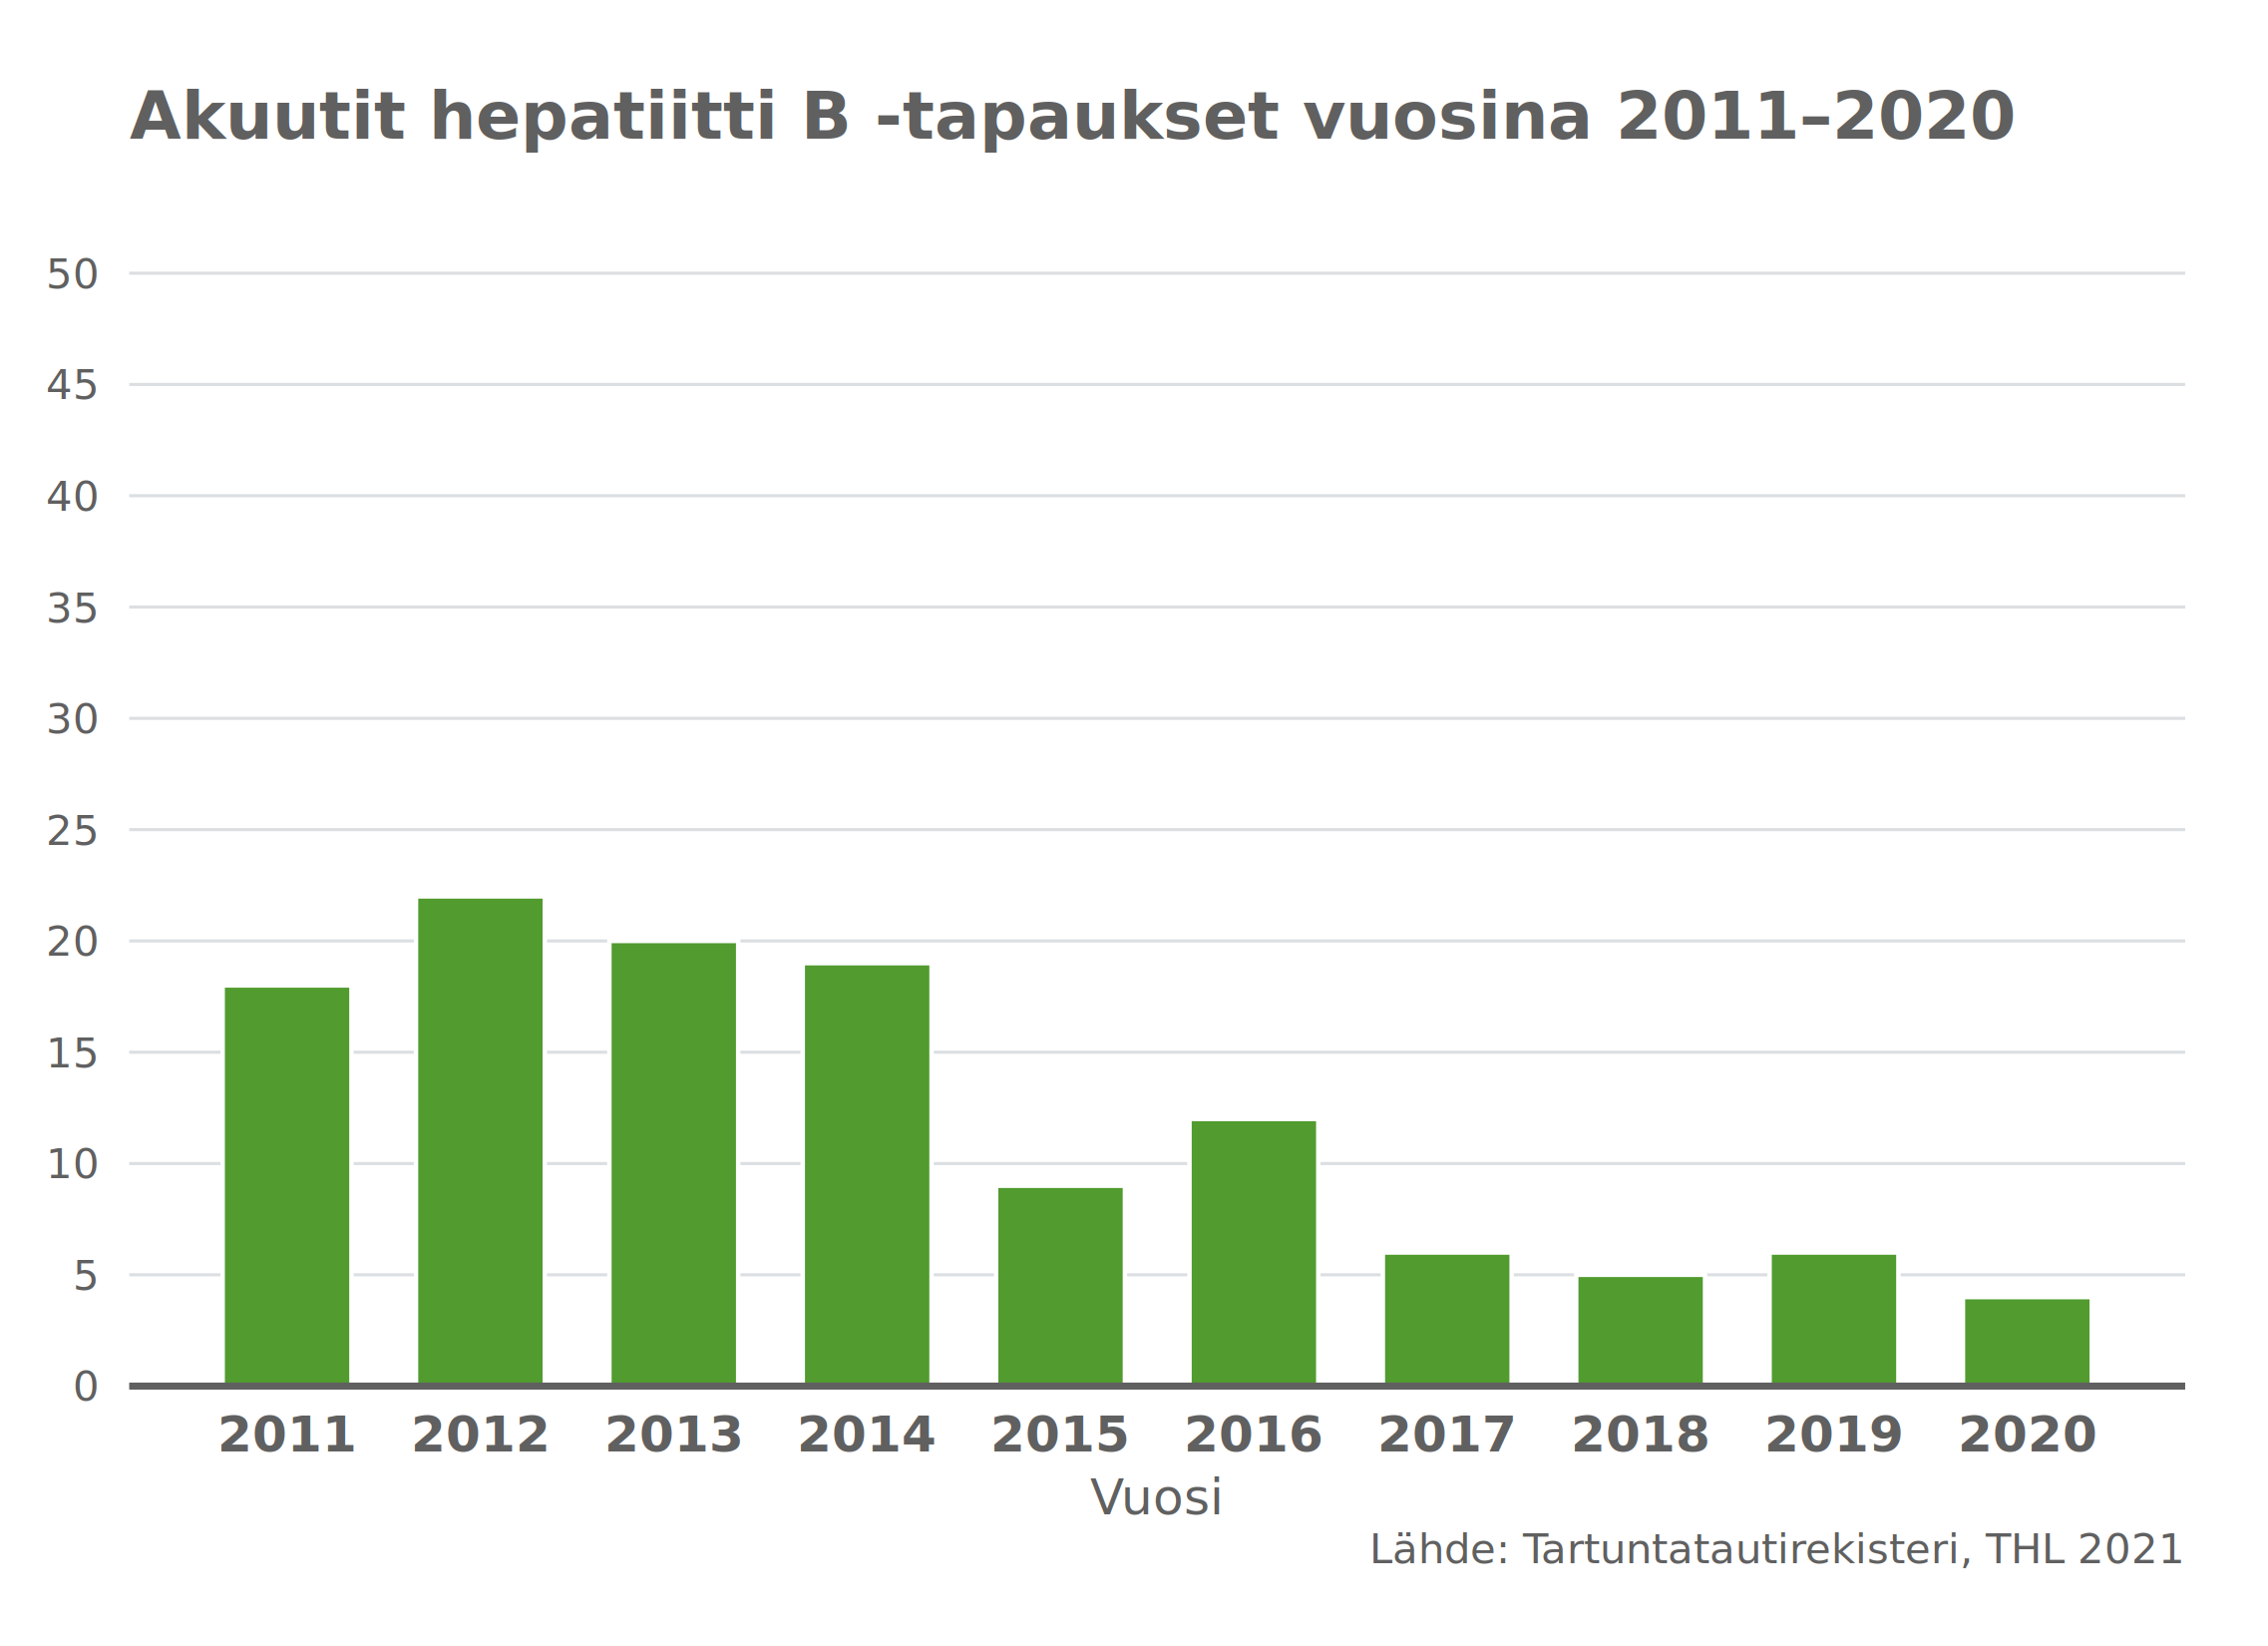 Akuutti hepatiitti B-tapaukset vuosina 2011-2020.